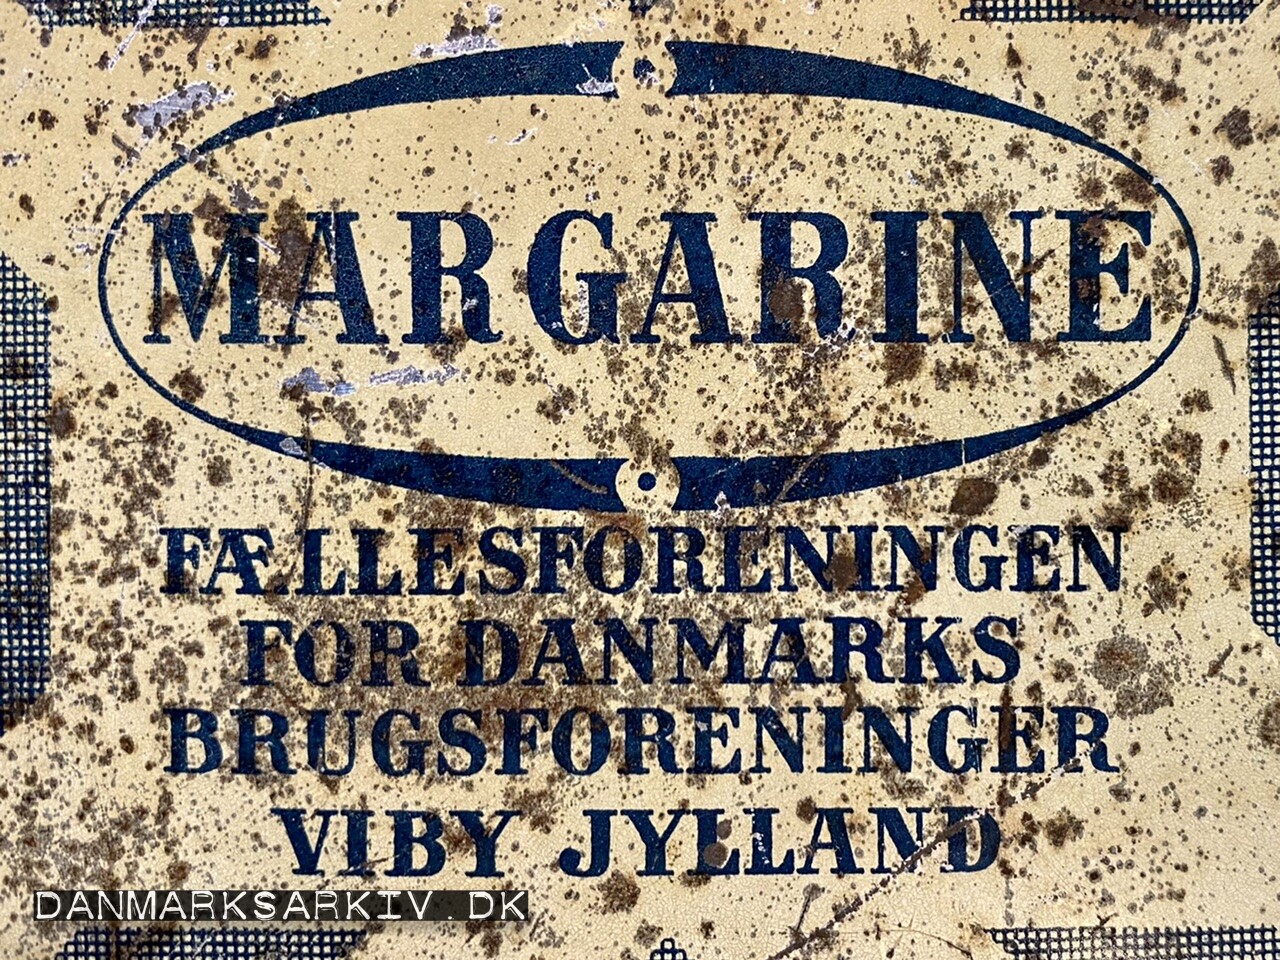 Margarine - Fællesforeningen for Danmarks Brugsforeninger (FDB) - Viby Jylland